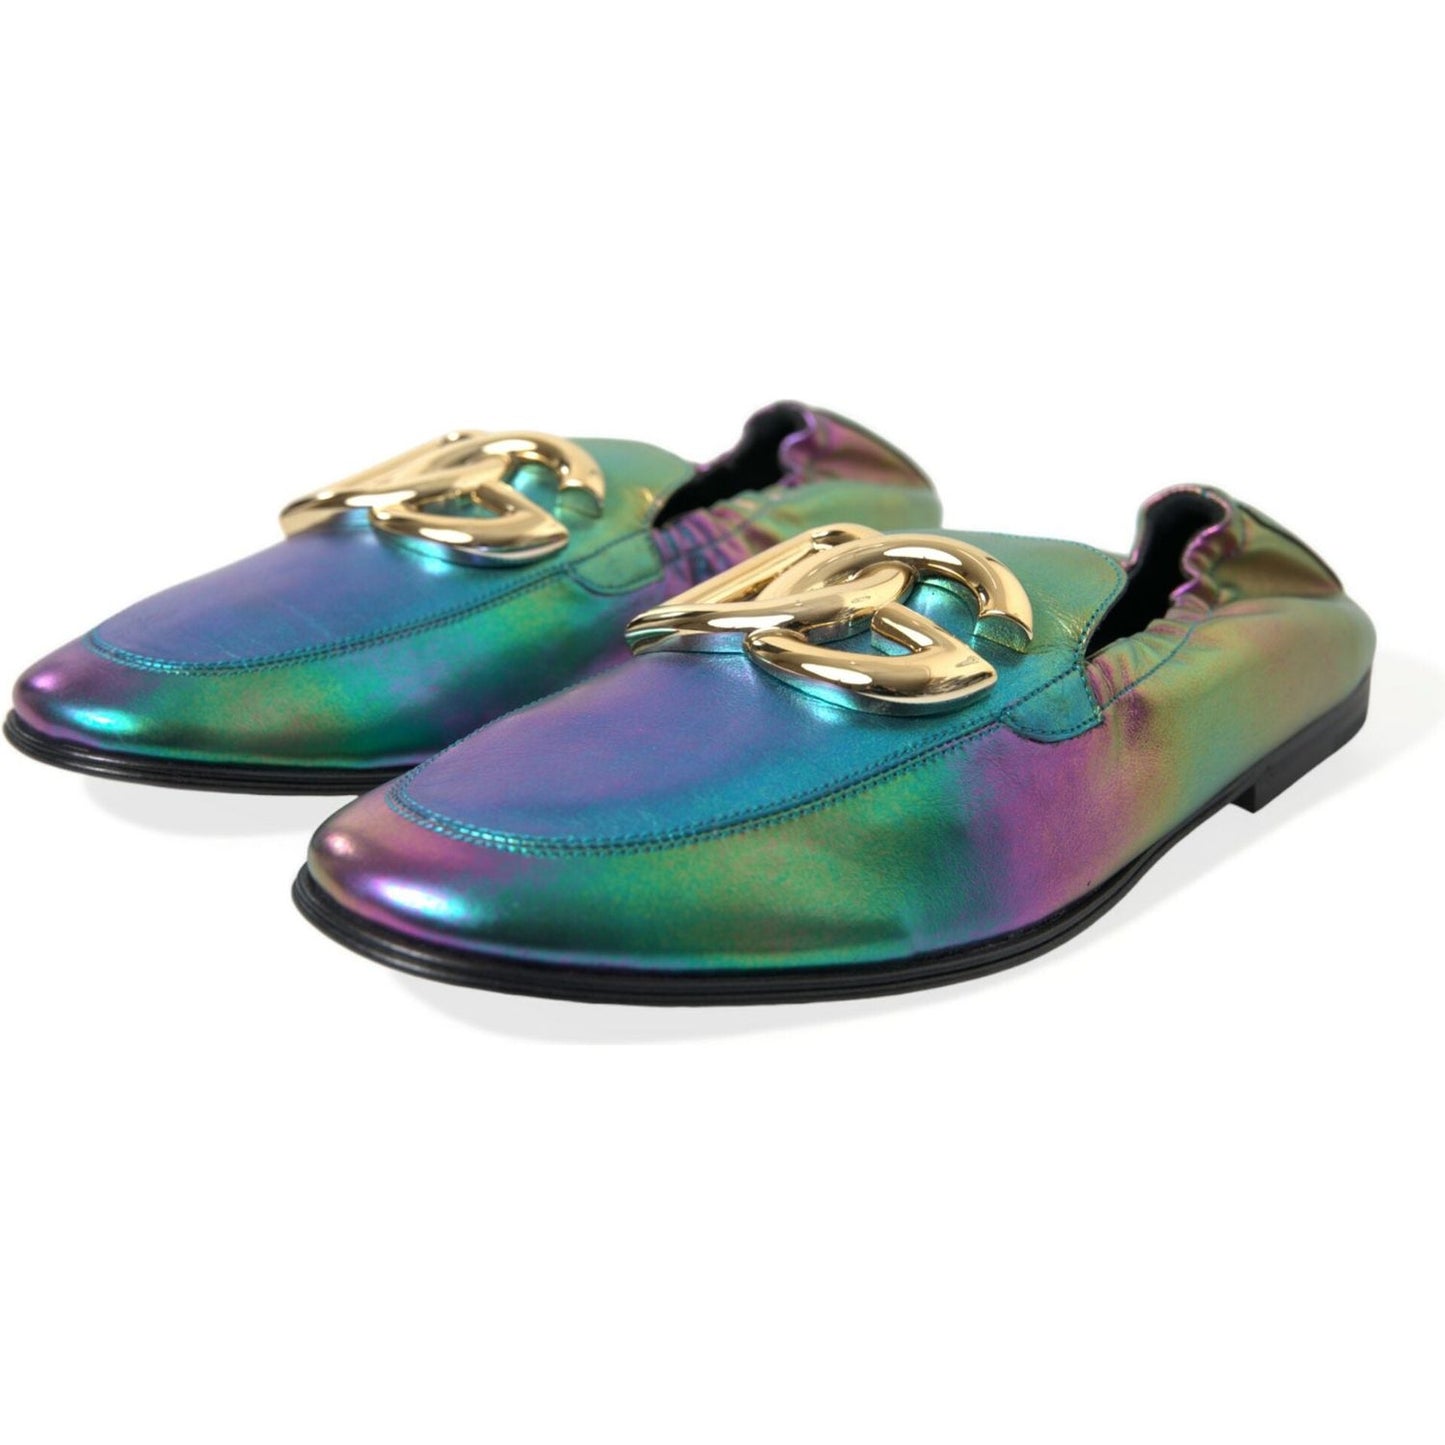 Dolce & Gabbana Elegant Iridescent Loafers for Gents multicolor-leather-dg-logo-loafer-dress-shoes